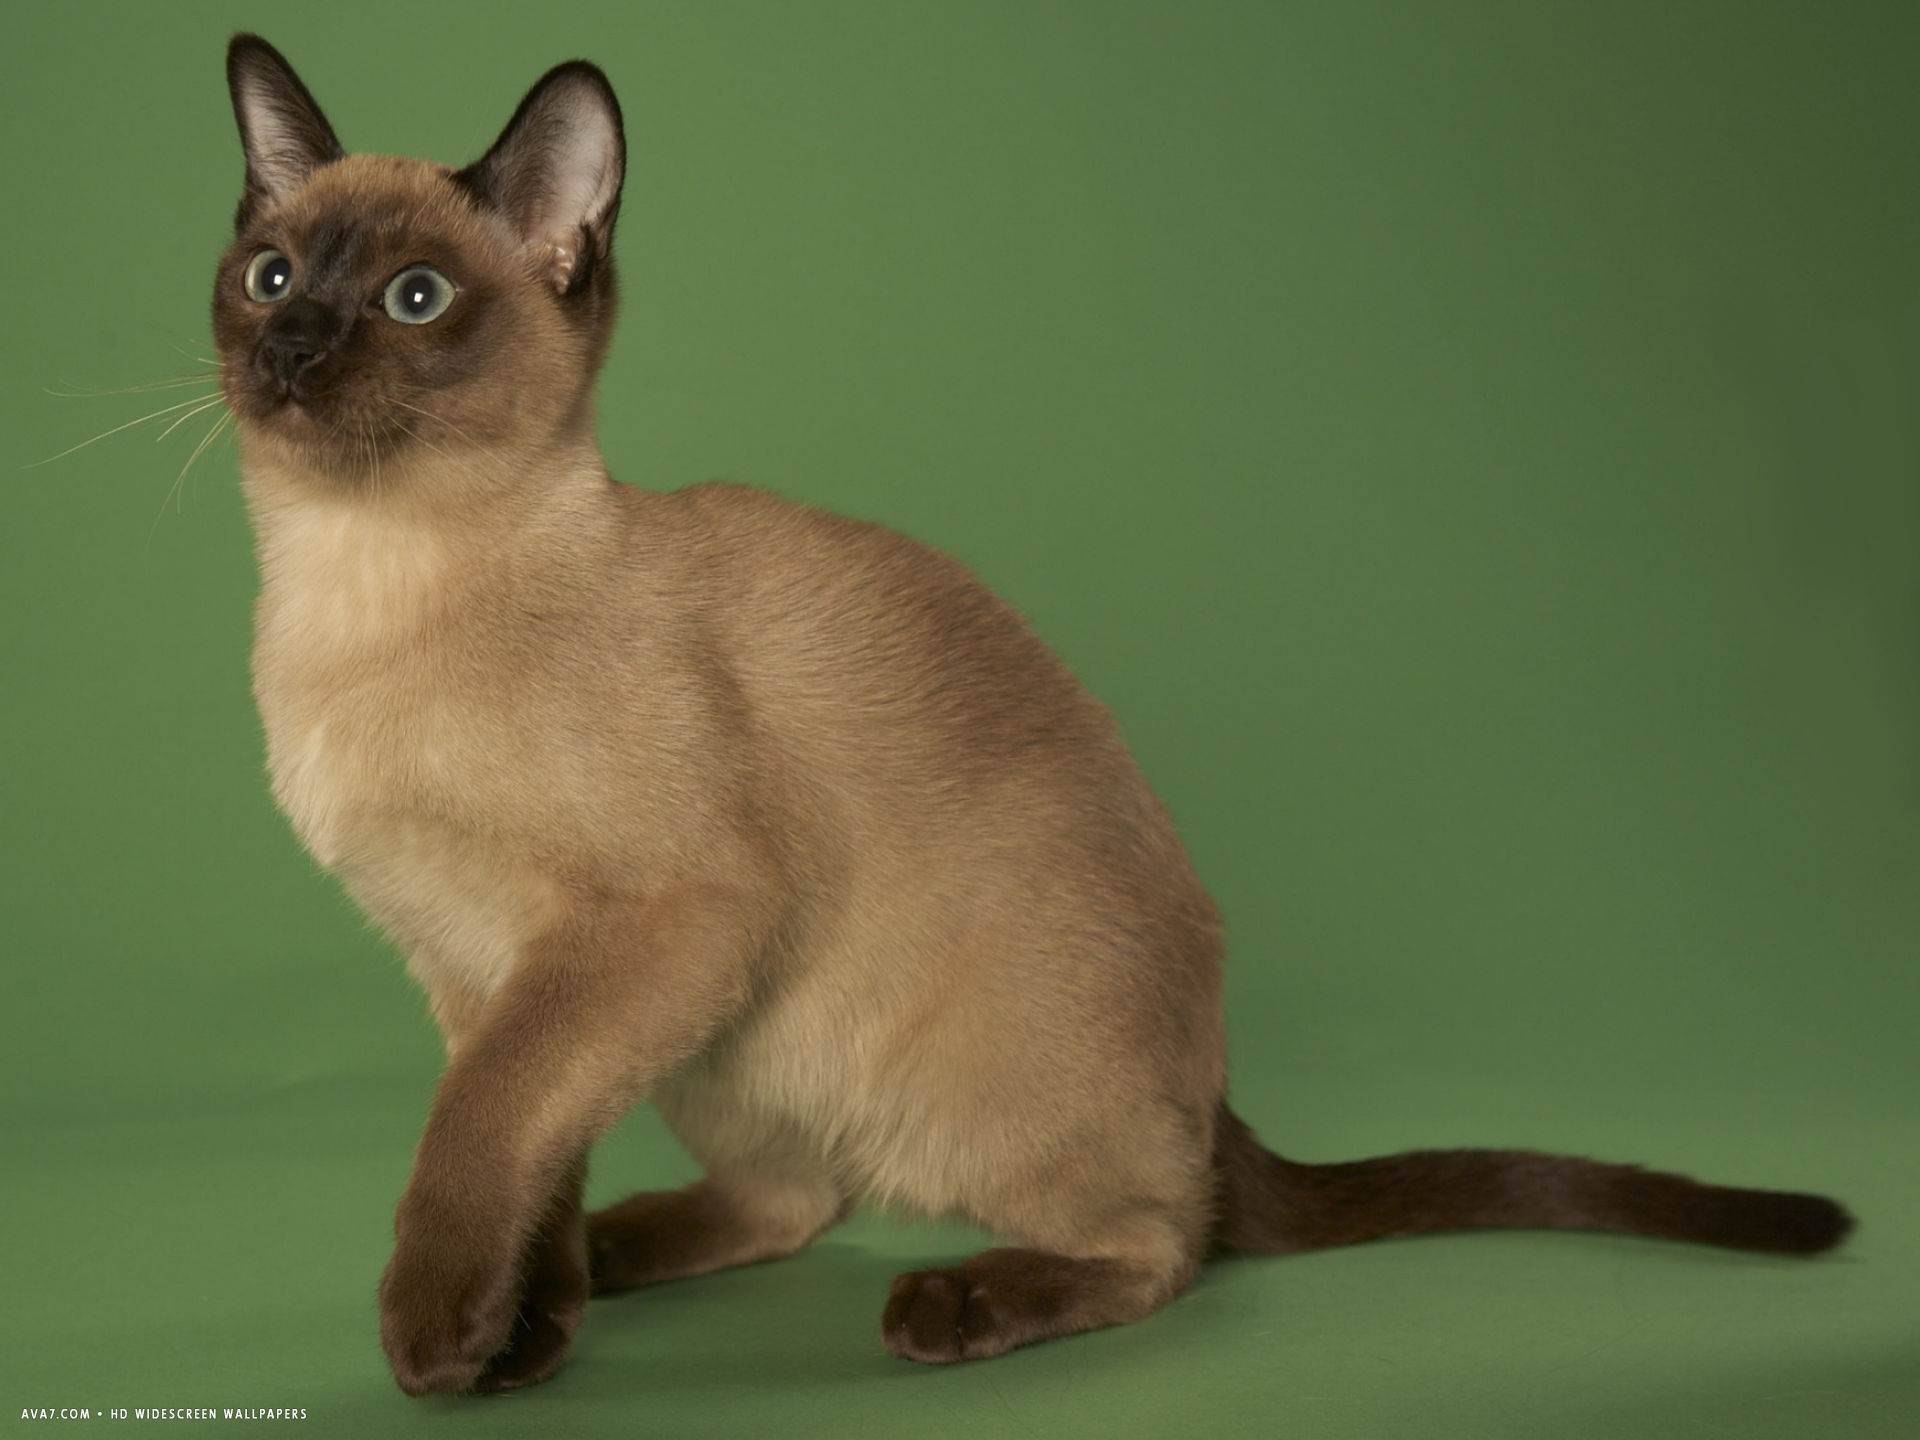 Тонкинская порода кошек - окрасы, описание с фото и видео